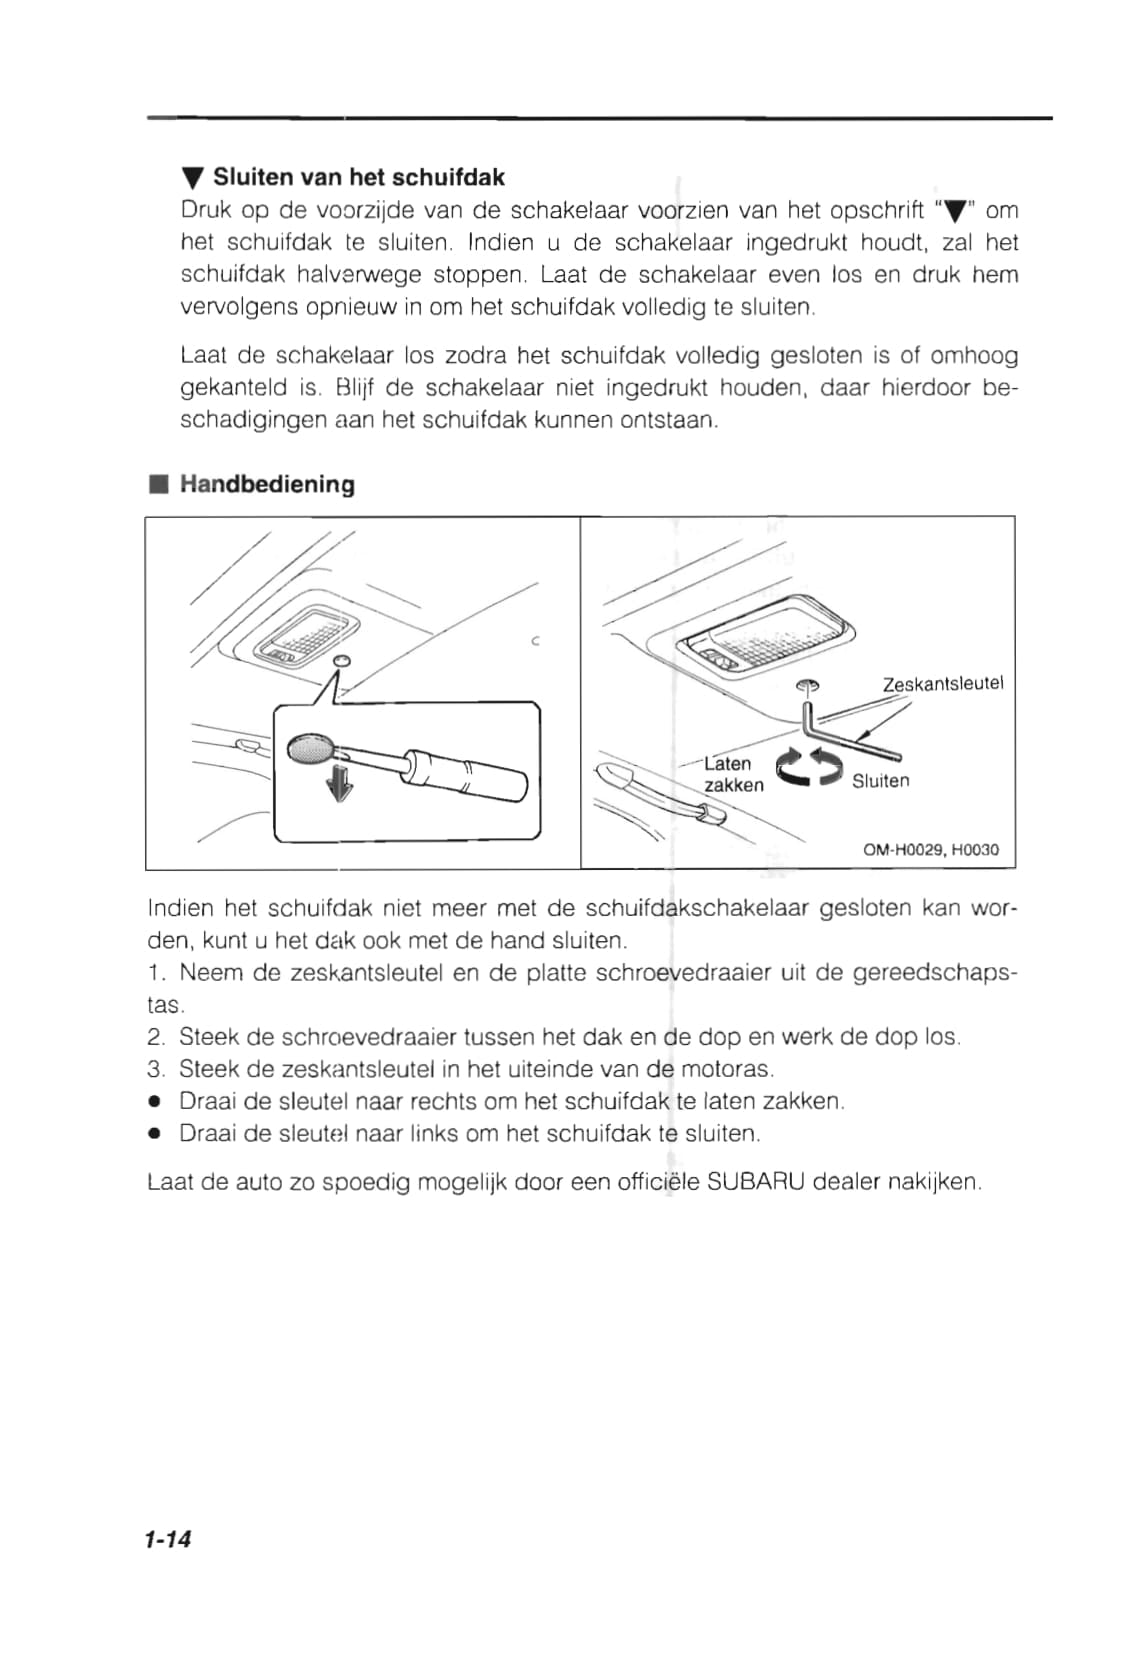 1993 Subaru Impreza Owner's Manual | Dutch